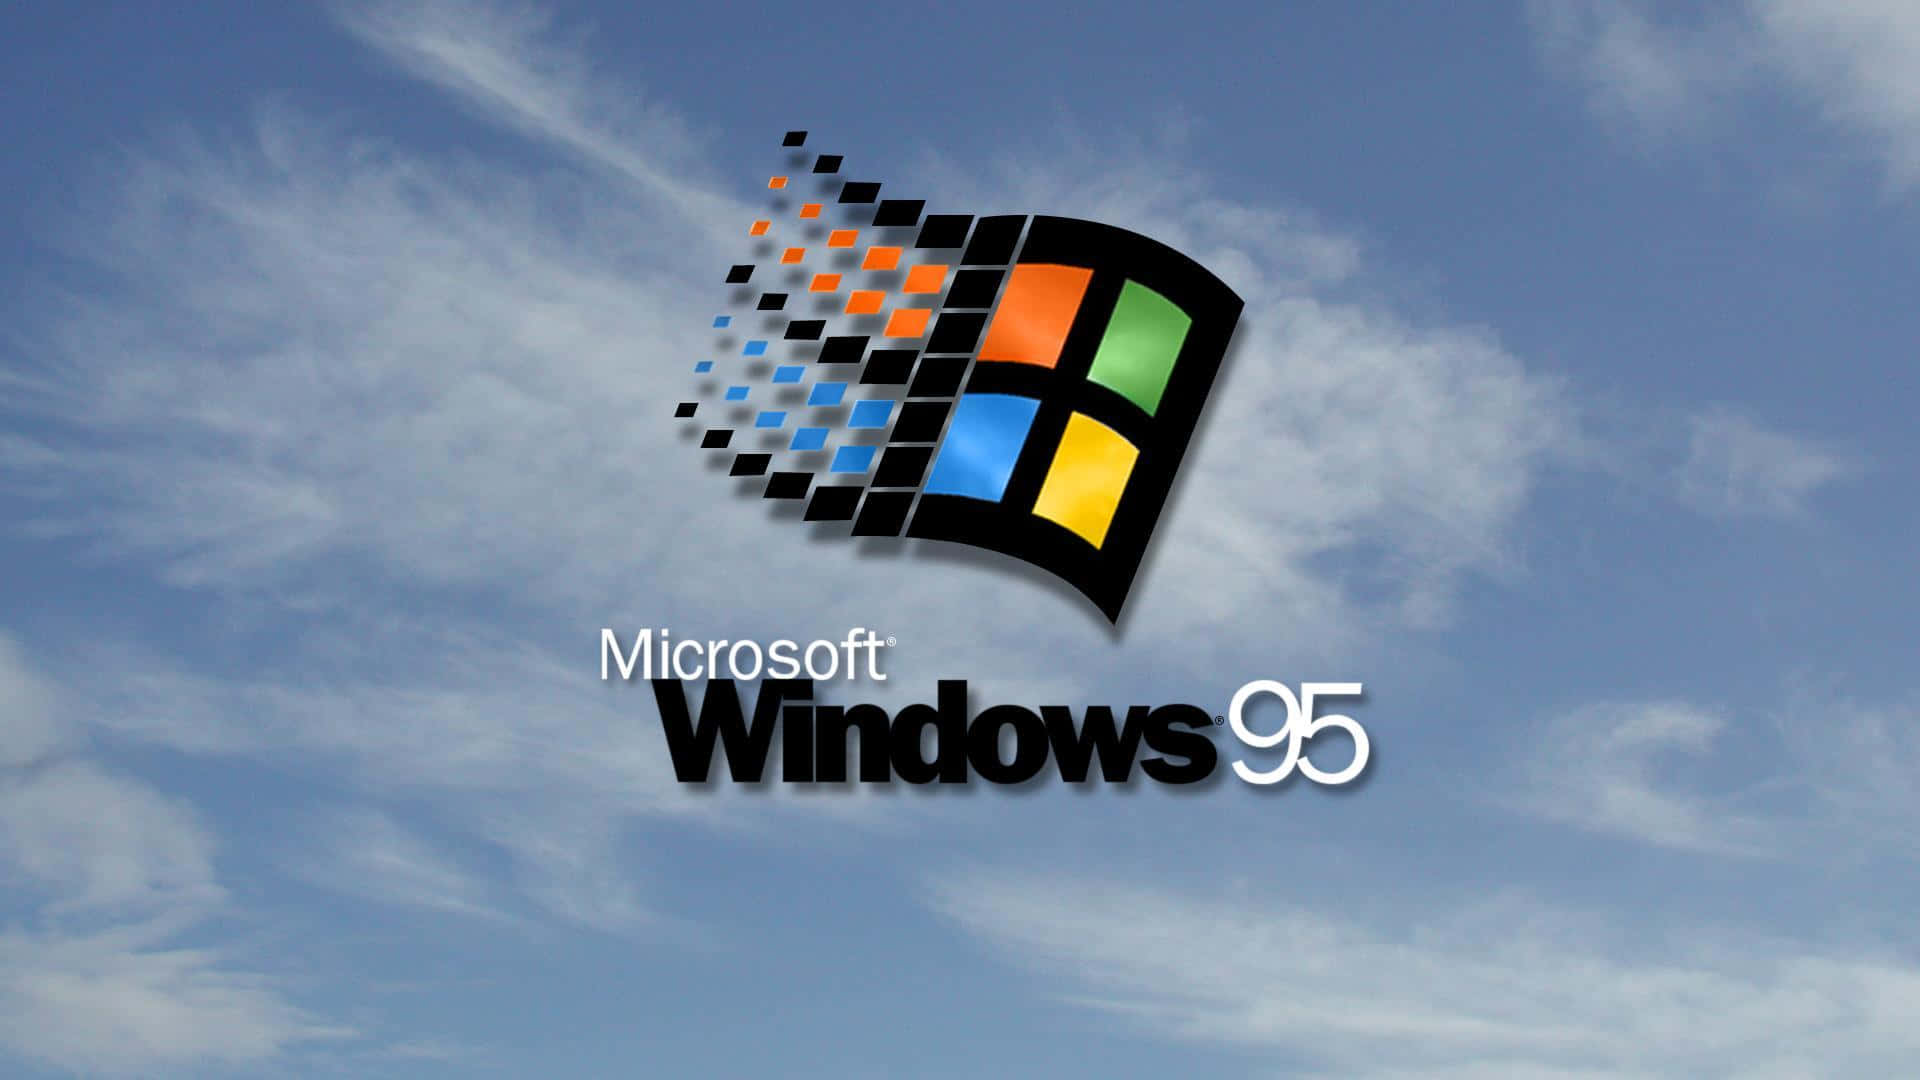 Interagirecon Il Mondo Conosciuto: Entra Nel Legato Di Windows 98